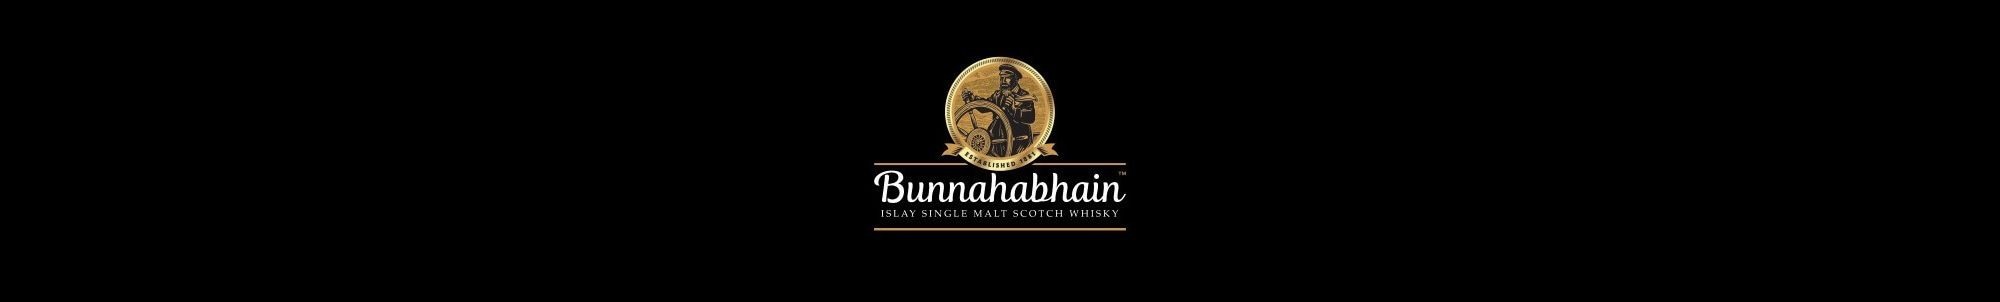 Distillerie Bunnahabhain